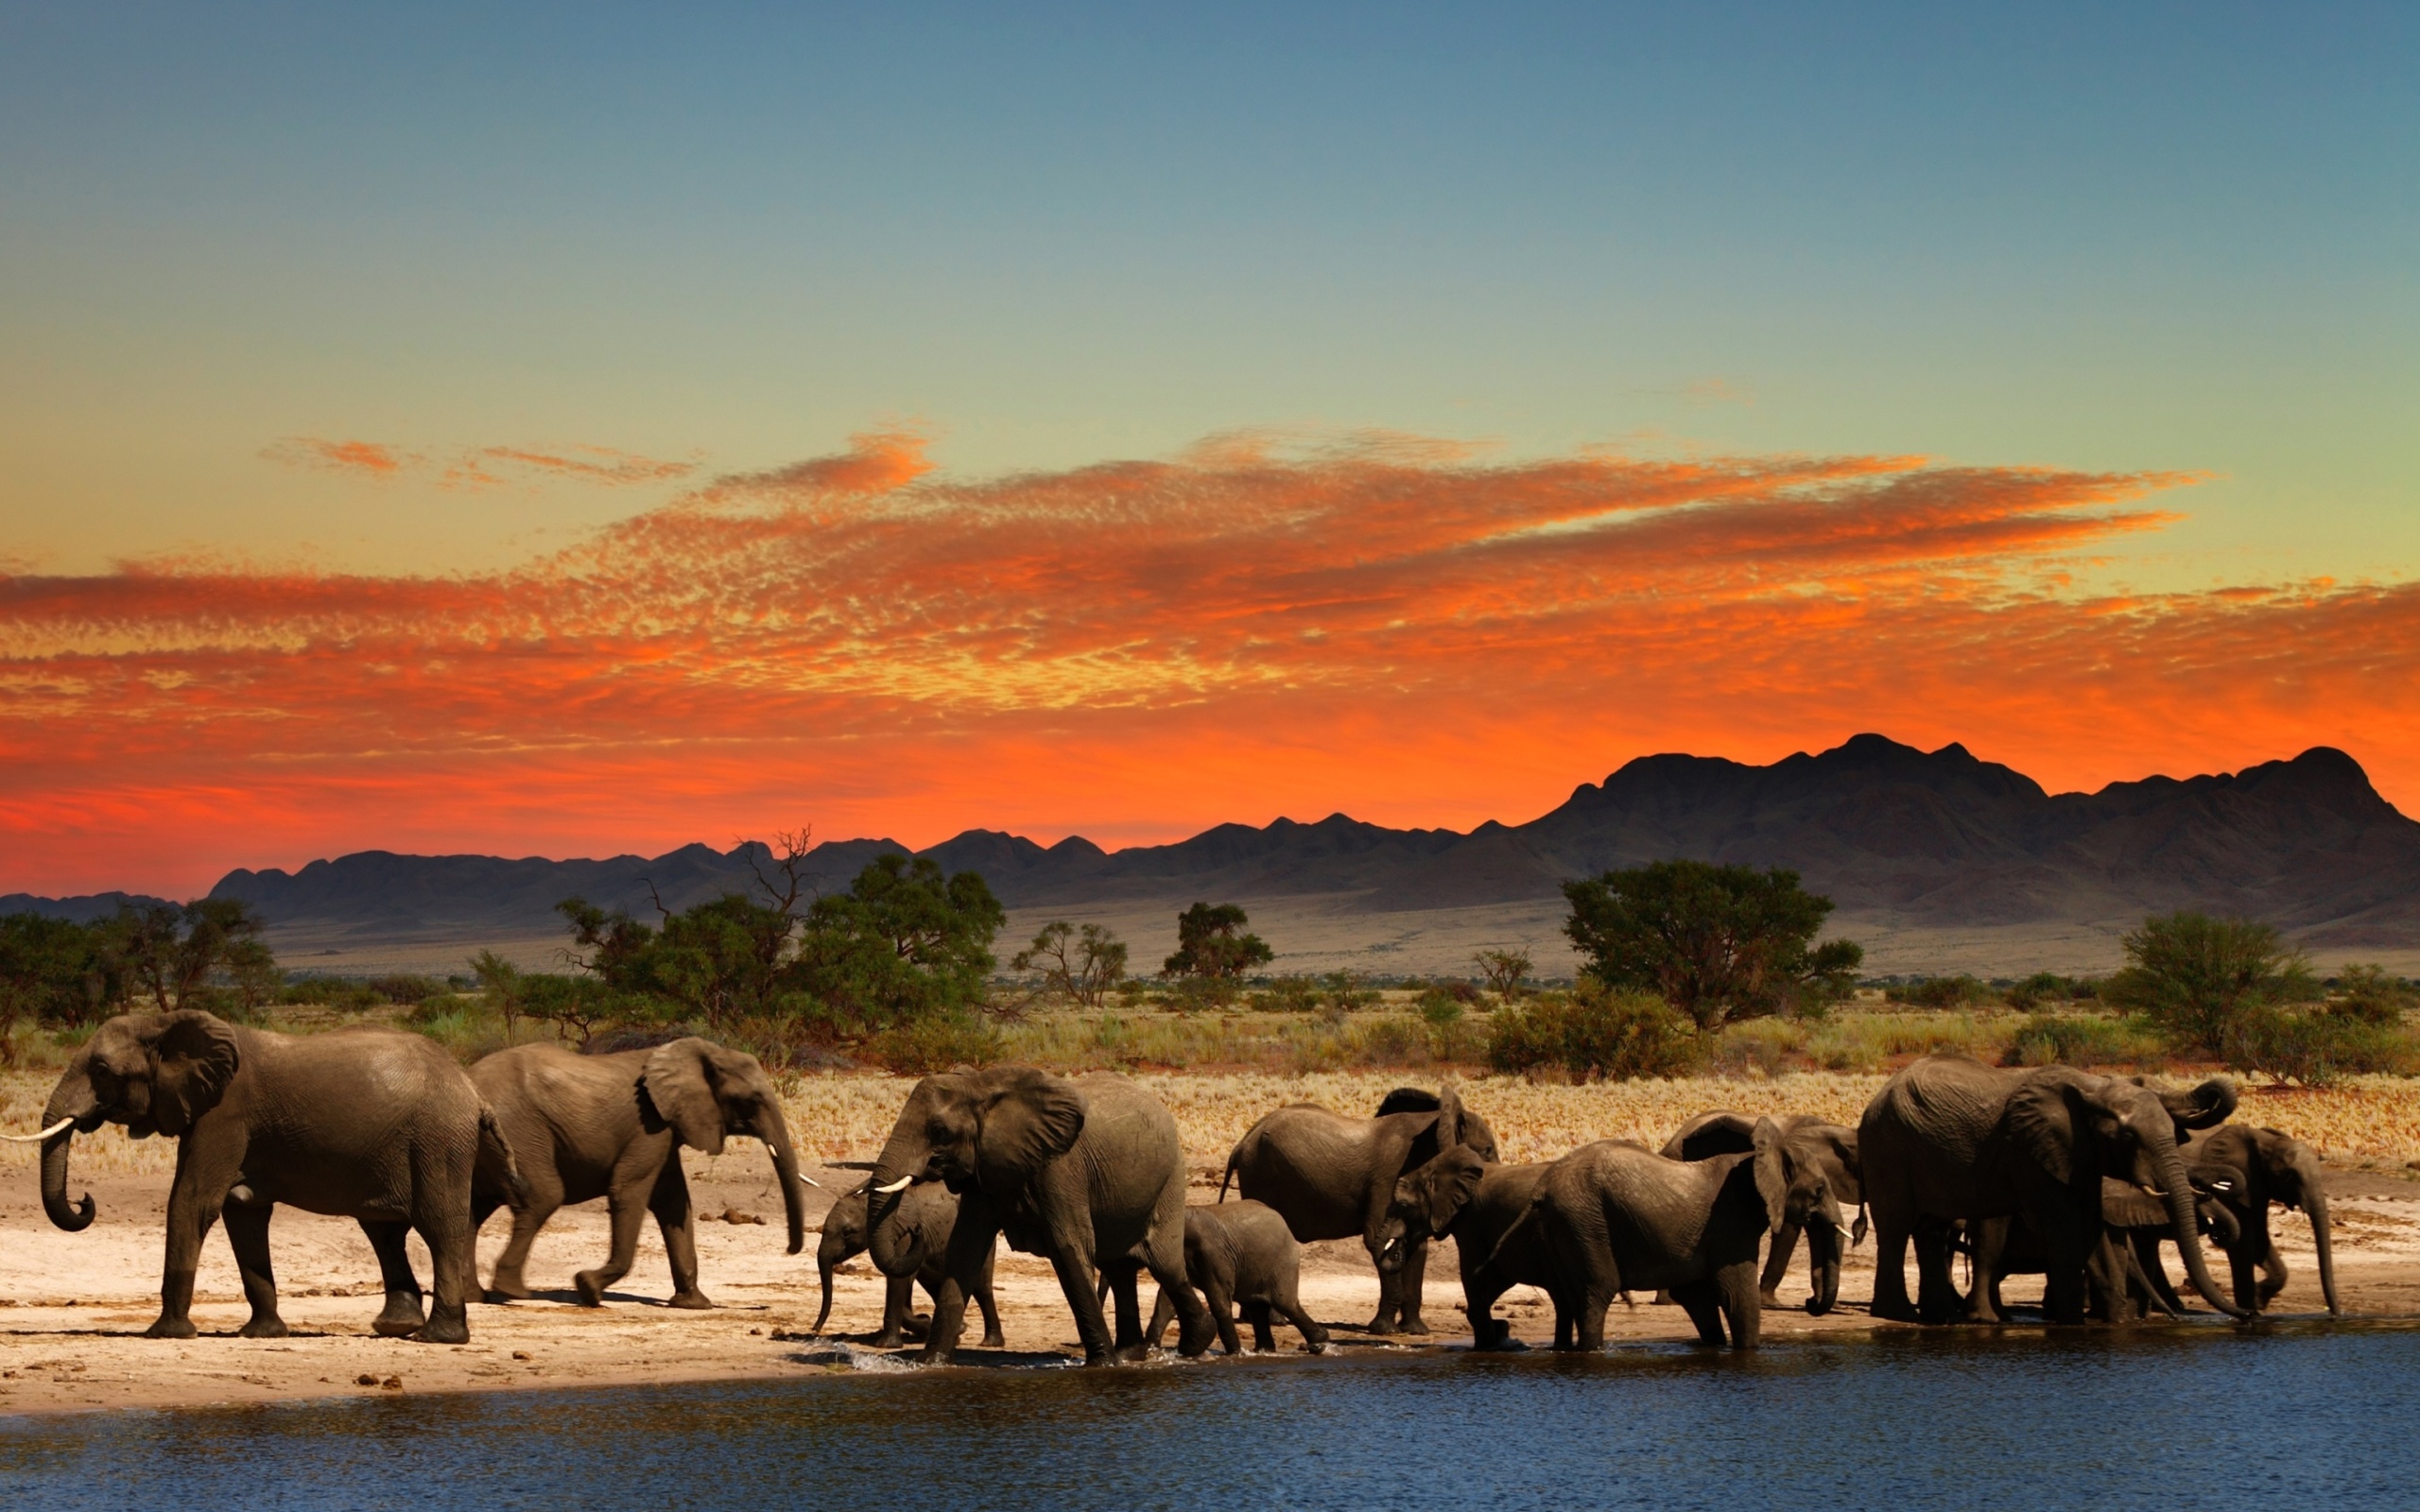 Herd of elephants Safari wallpaper 2560x1600